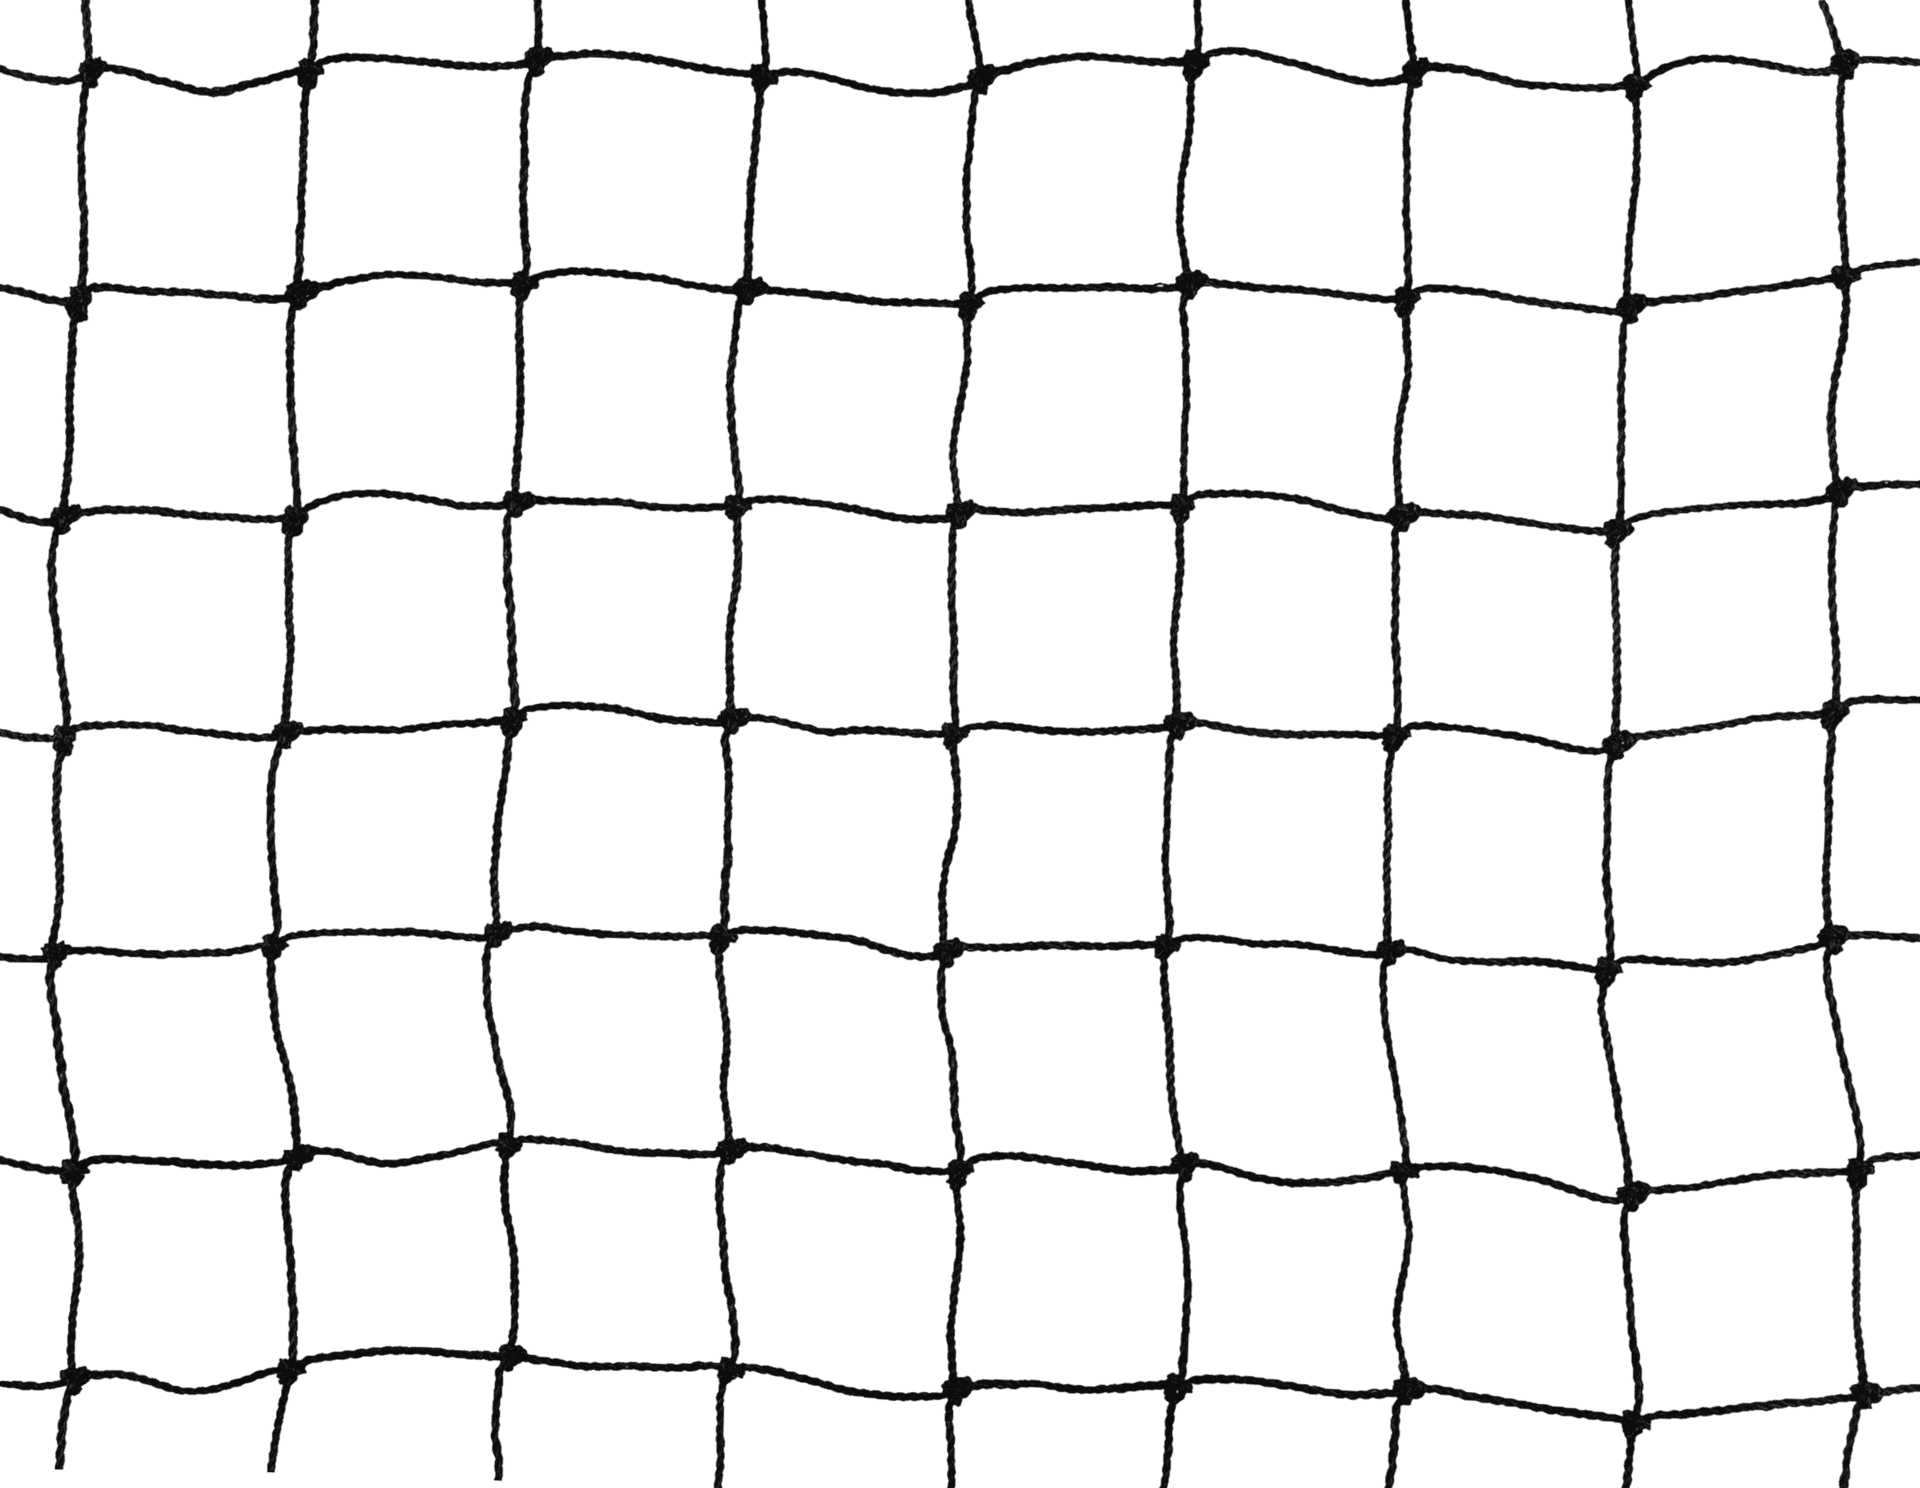 TAN Polyäthylennetz schwarz Maschenweite 28x28 mm, Garnstärke 1 mm, 10mx10m